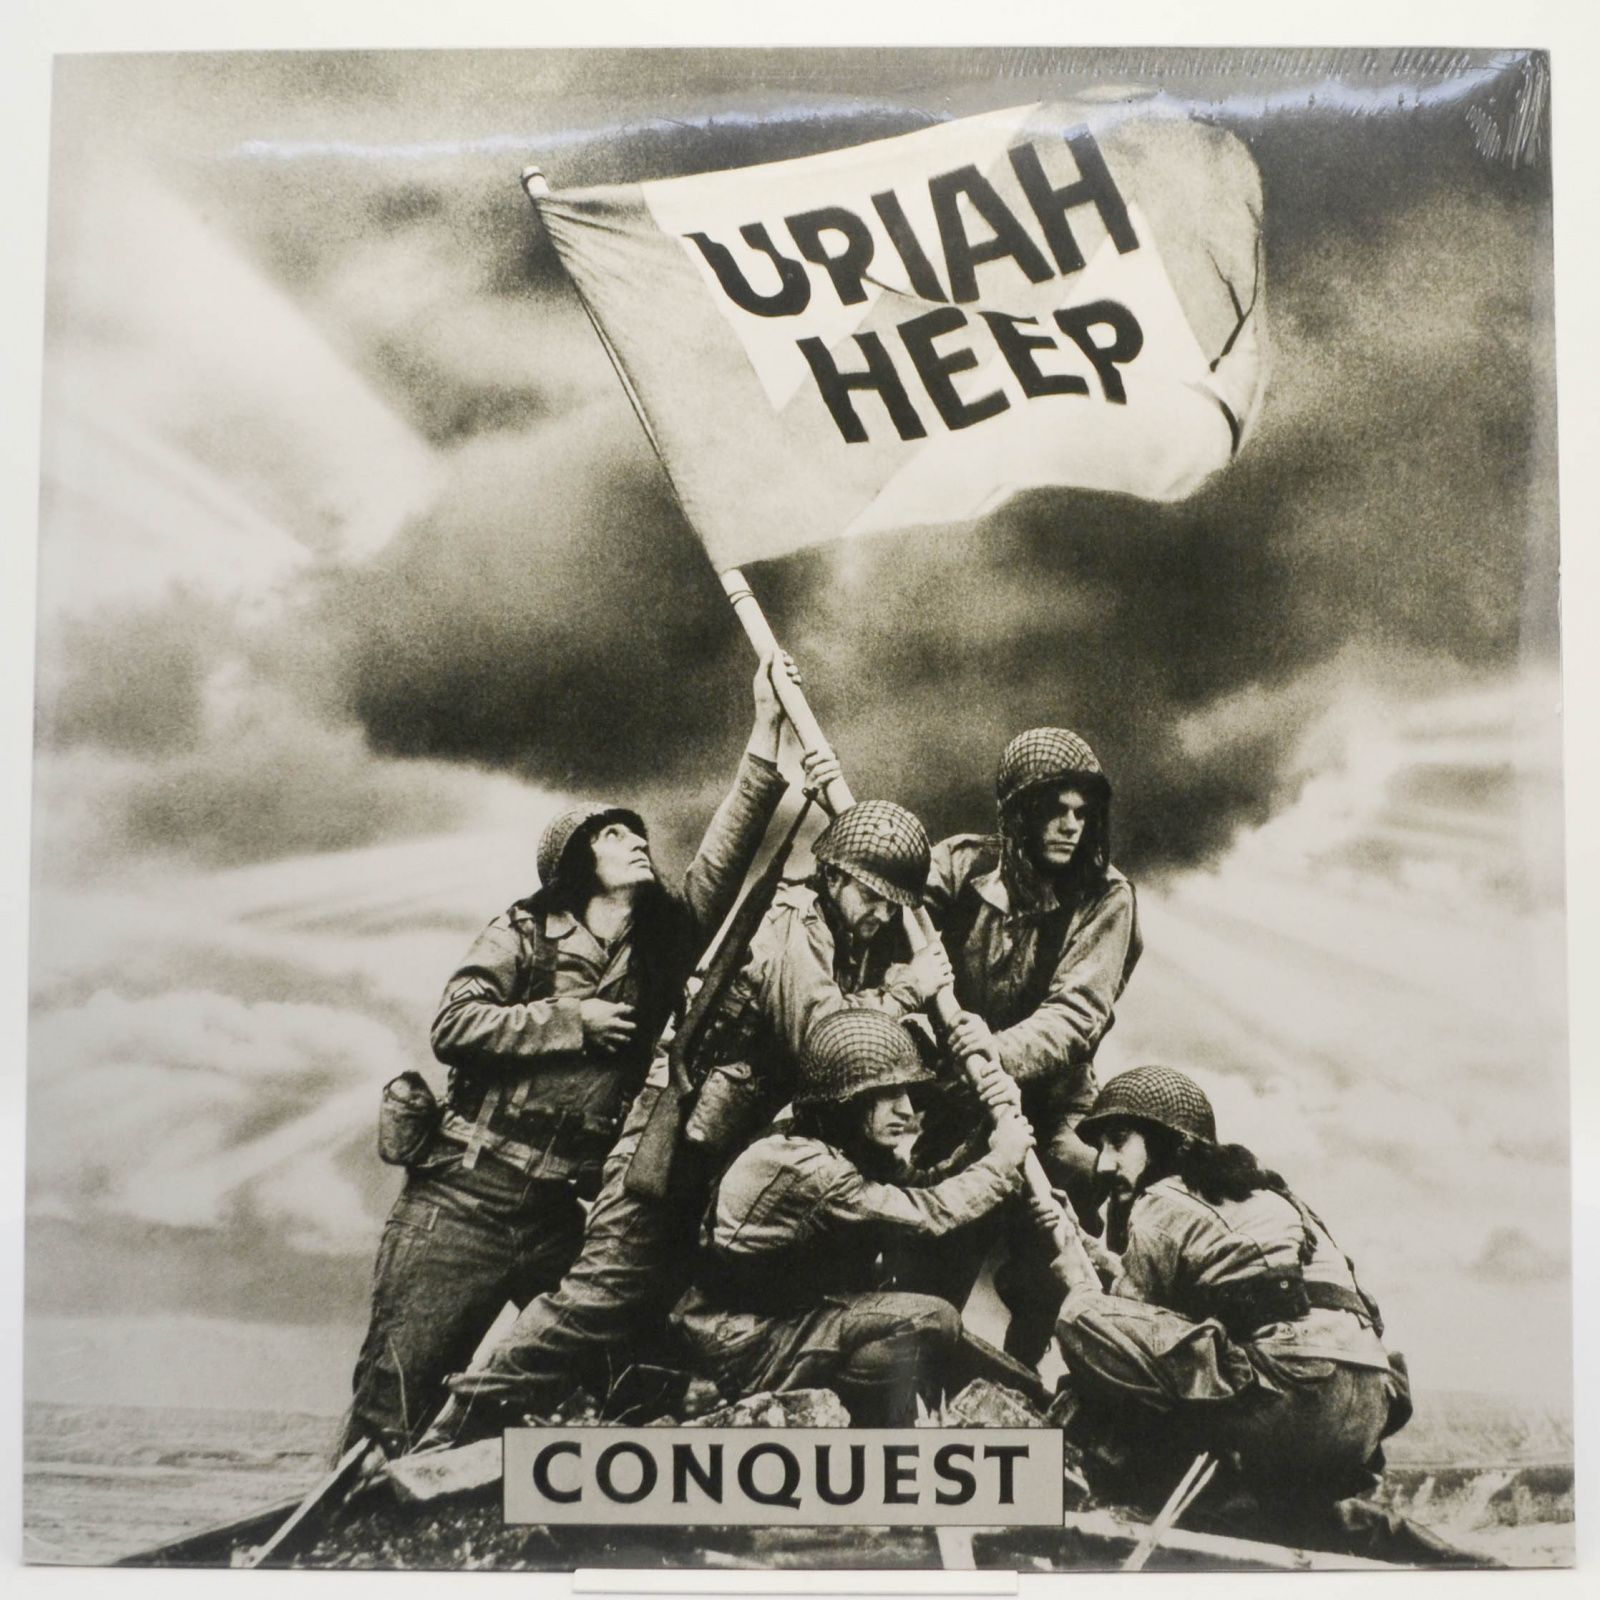 Conquest, 1980